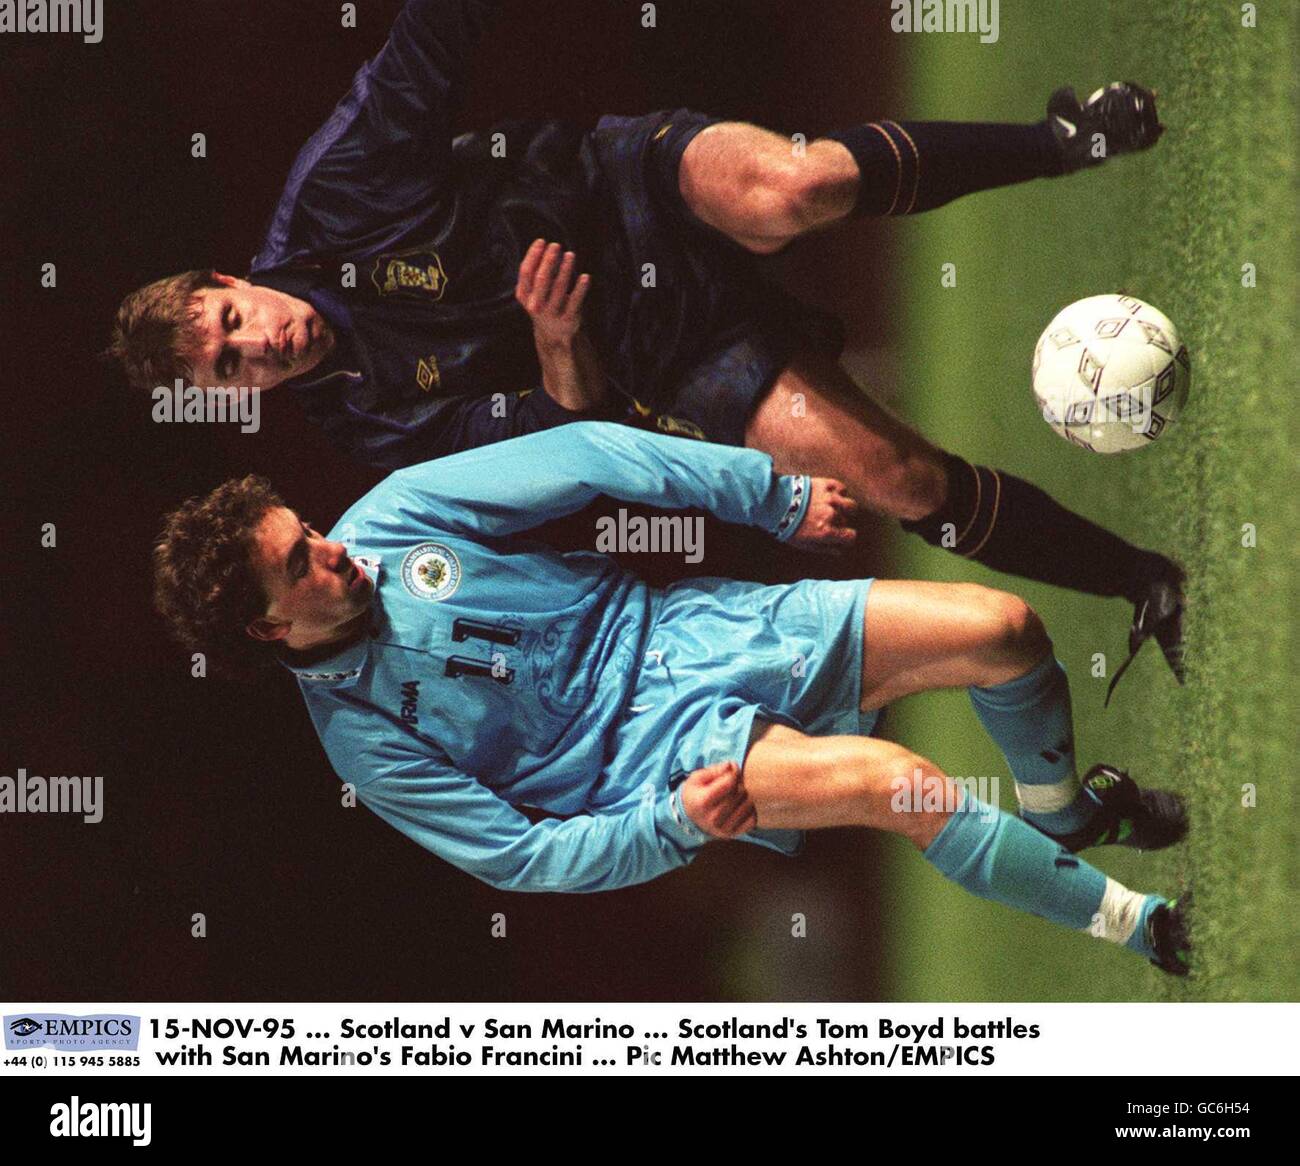 15-NOV-95, Escocia contra San Marino, Tom Boyd de Escocia lucha con Fabio Francini de San Marino Foto de stock